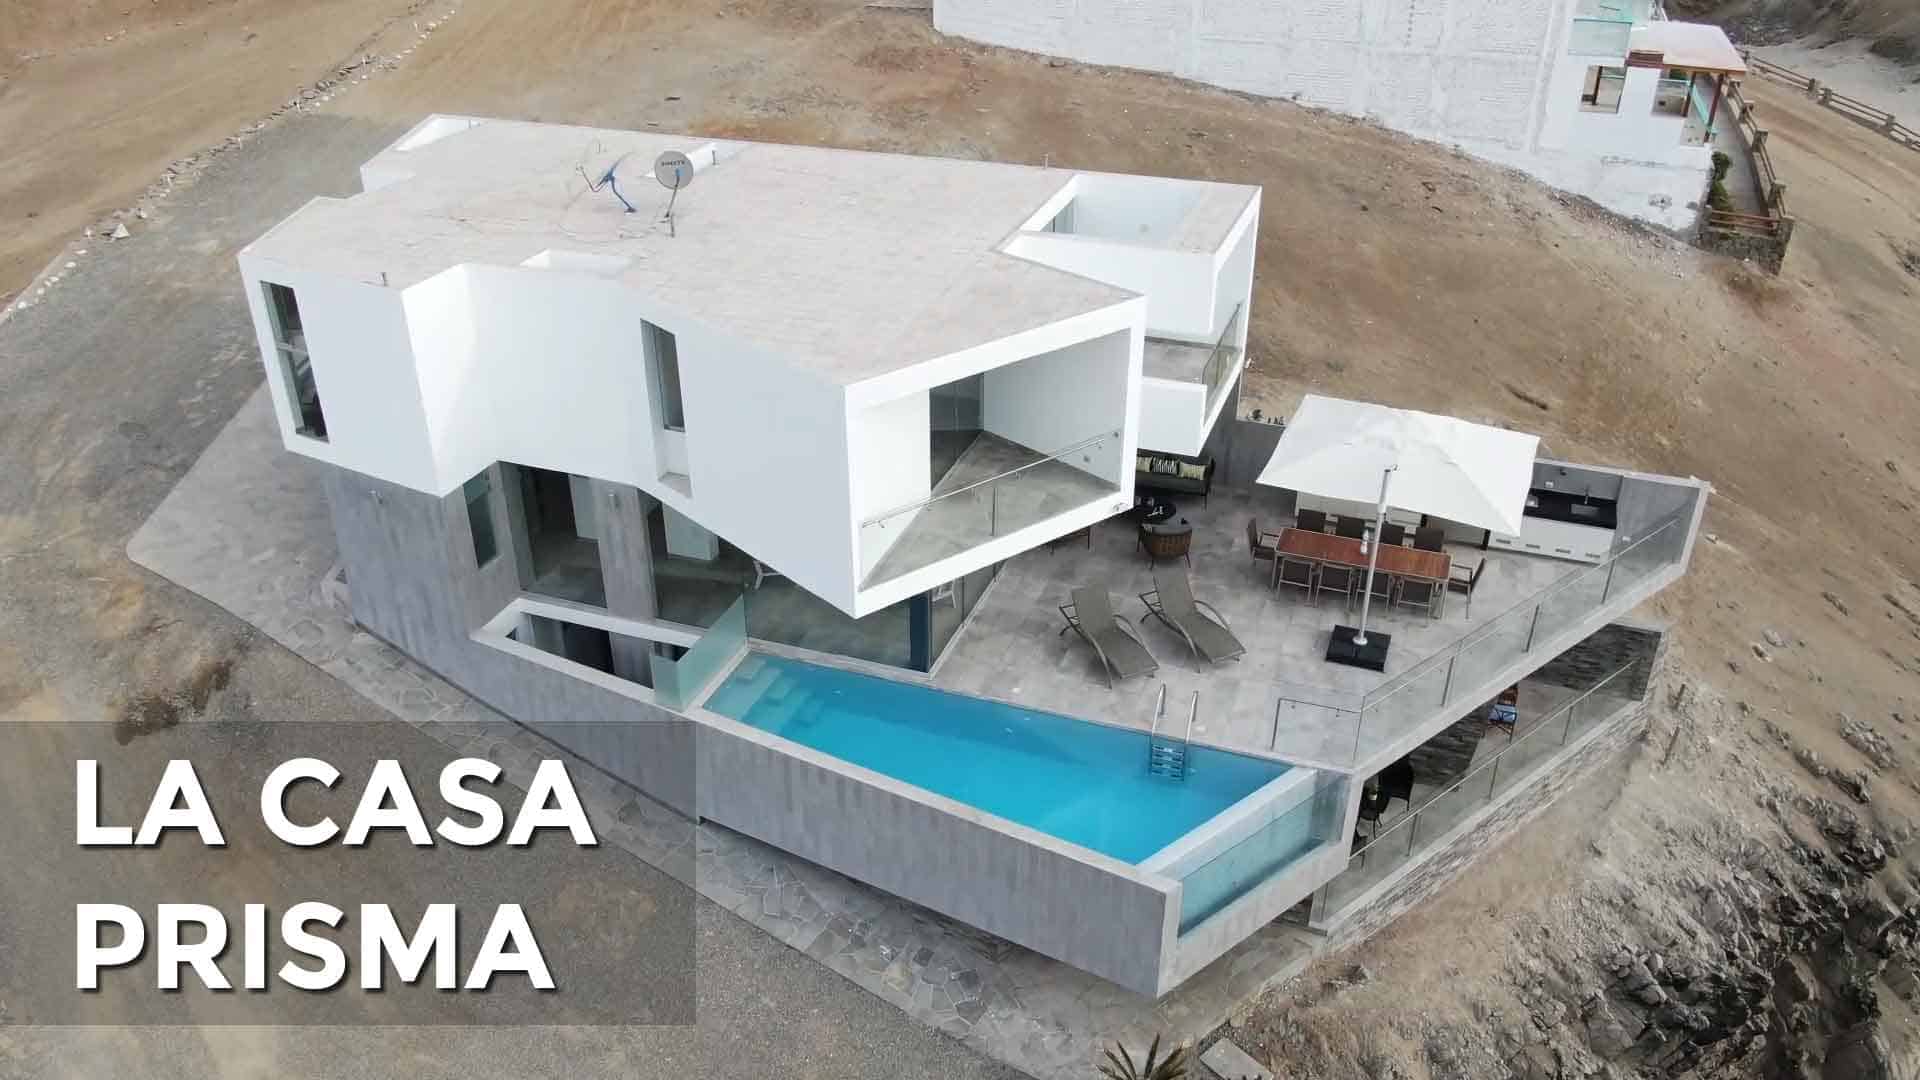 La Casa Prisma